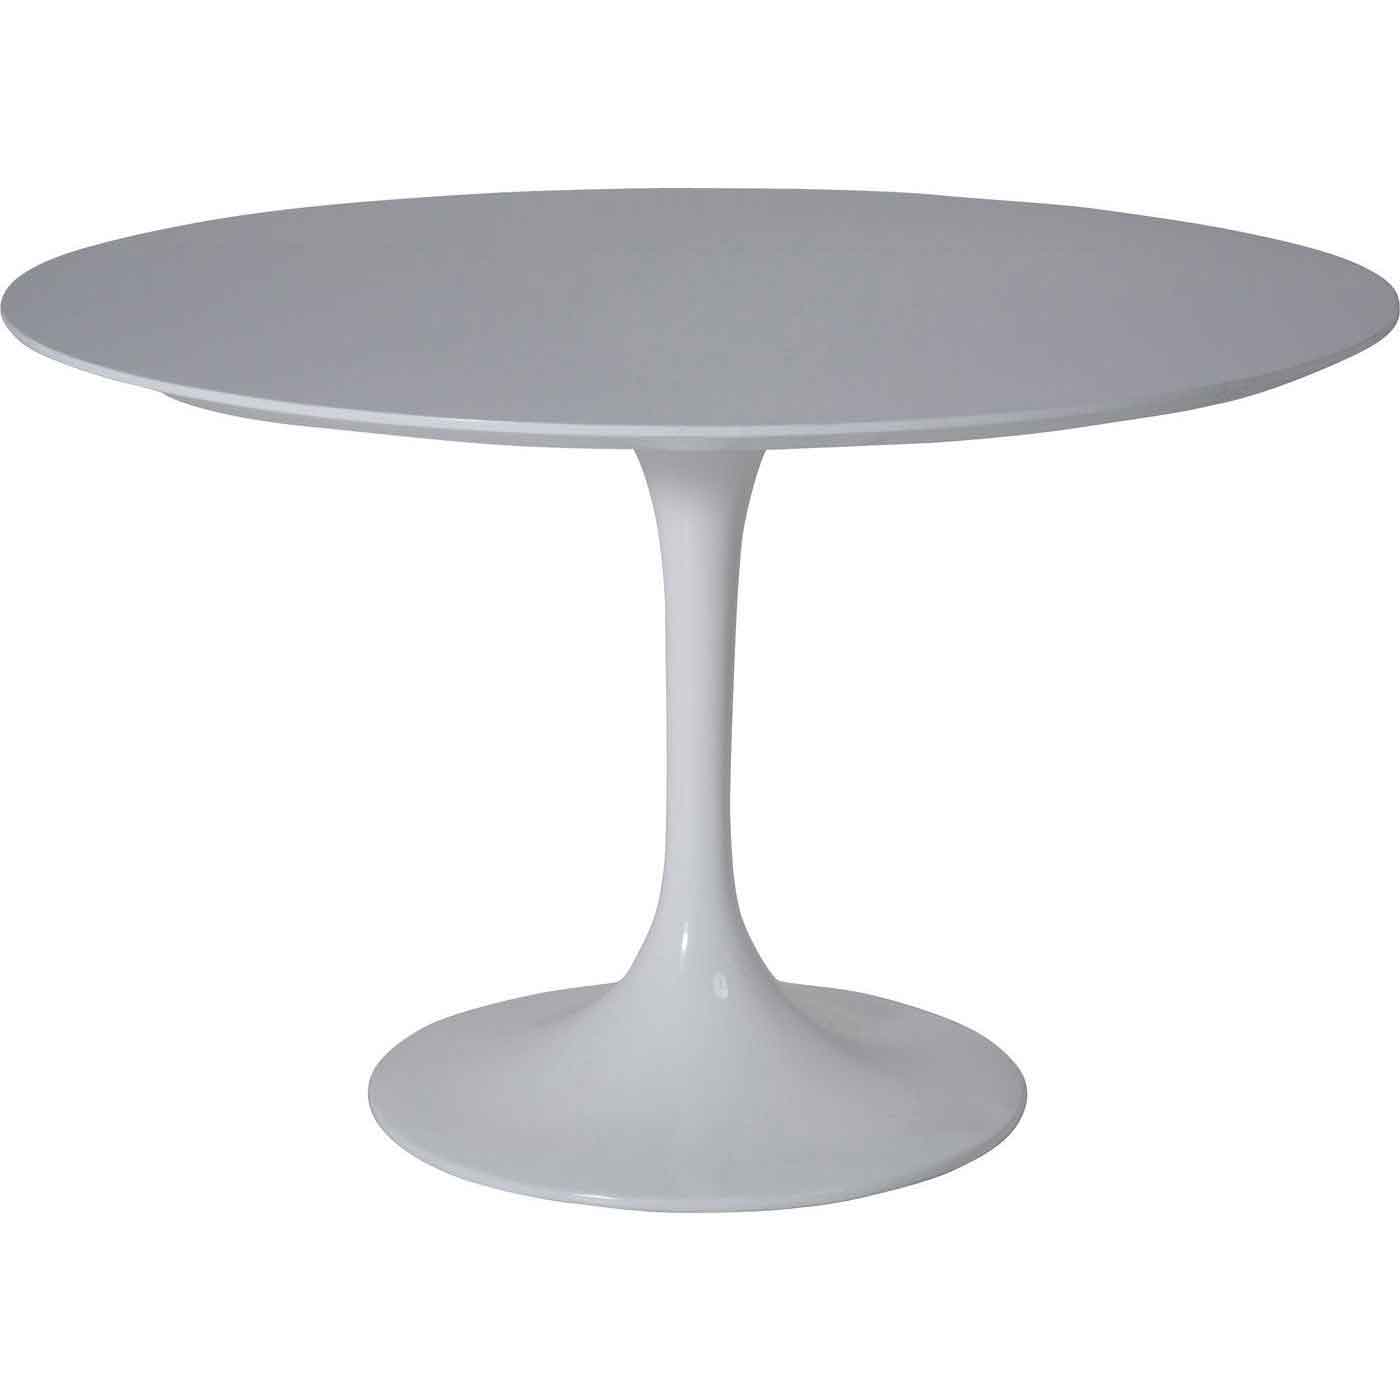 KARE DESIGN Invitation spisebord - hvid fiberglas, metal og træ, rundt (Ø:120) thumbnail